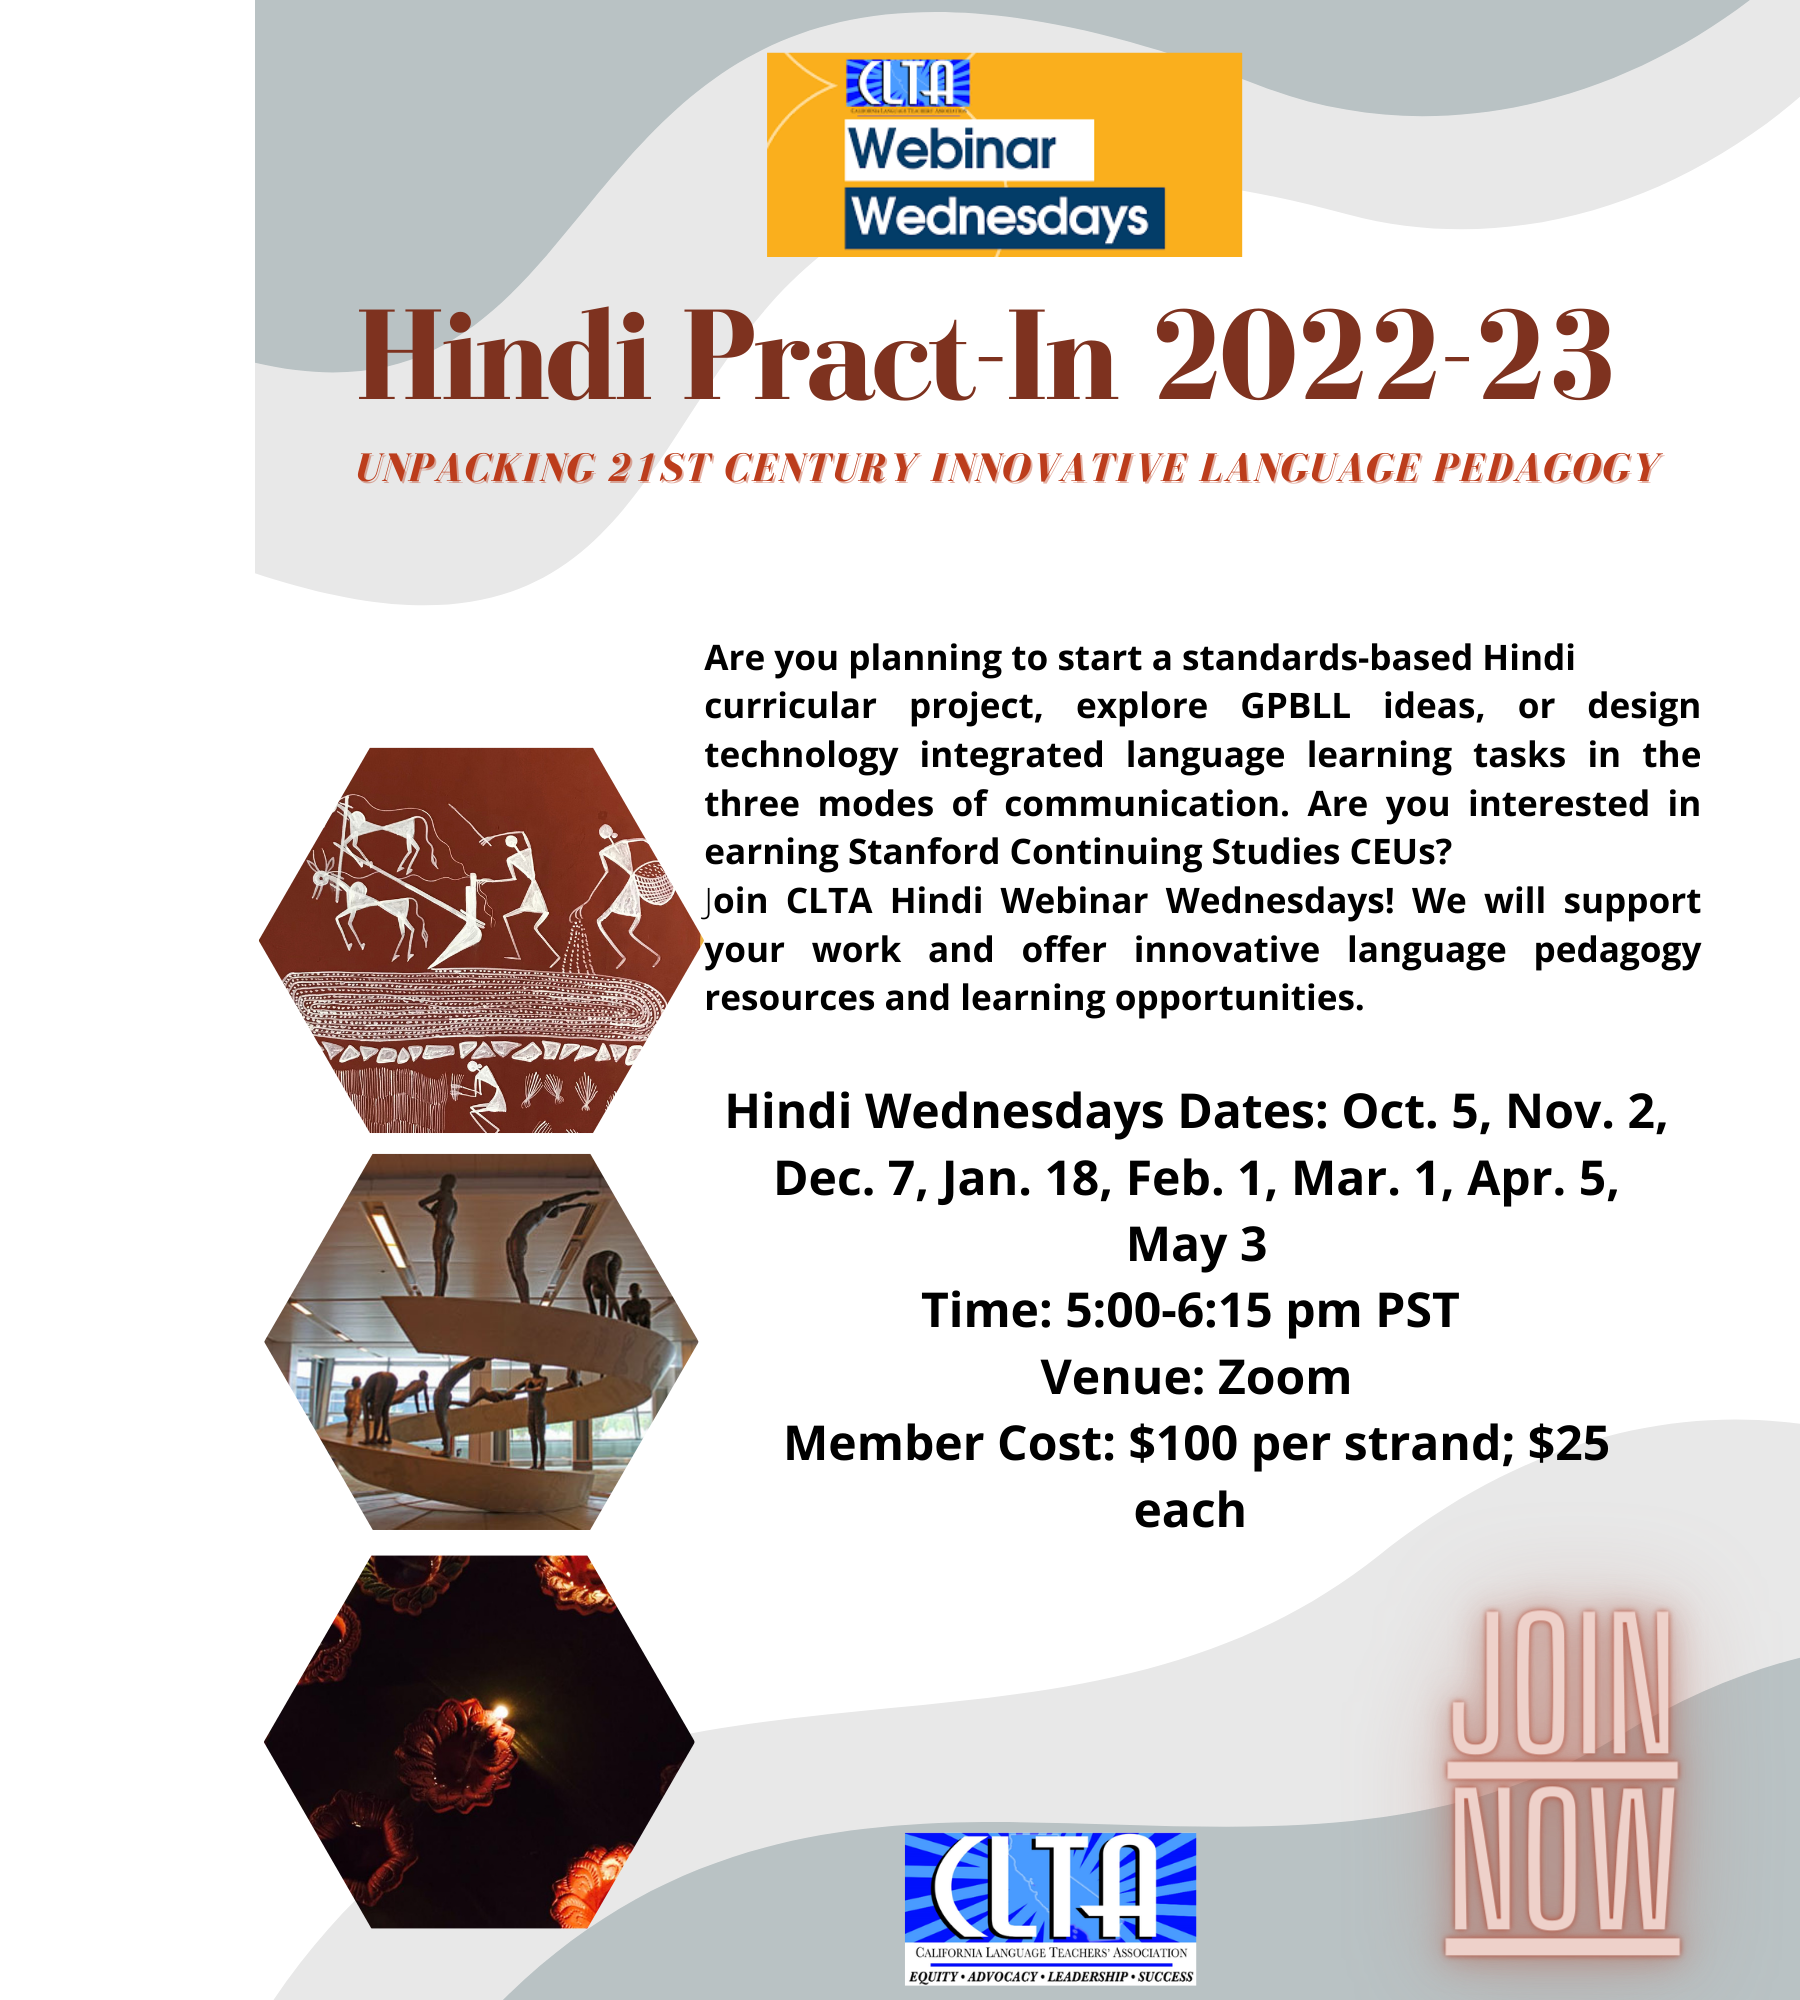 CLTA Hindi Pract-In 2022-23 (2)